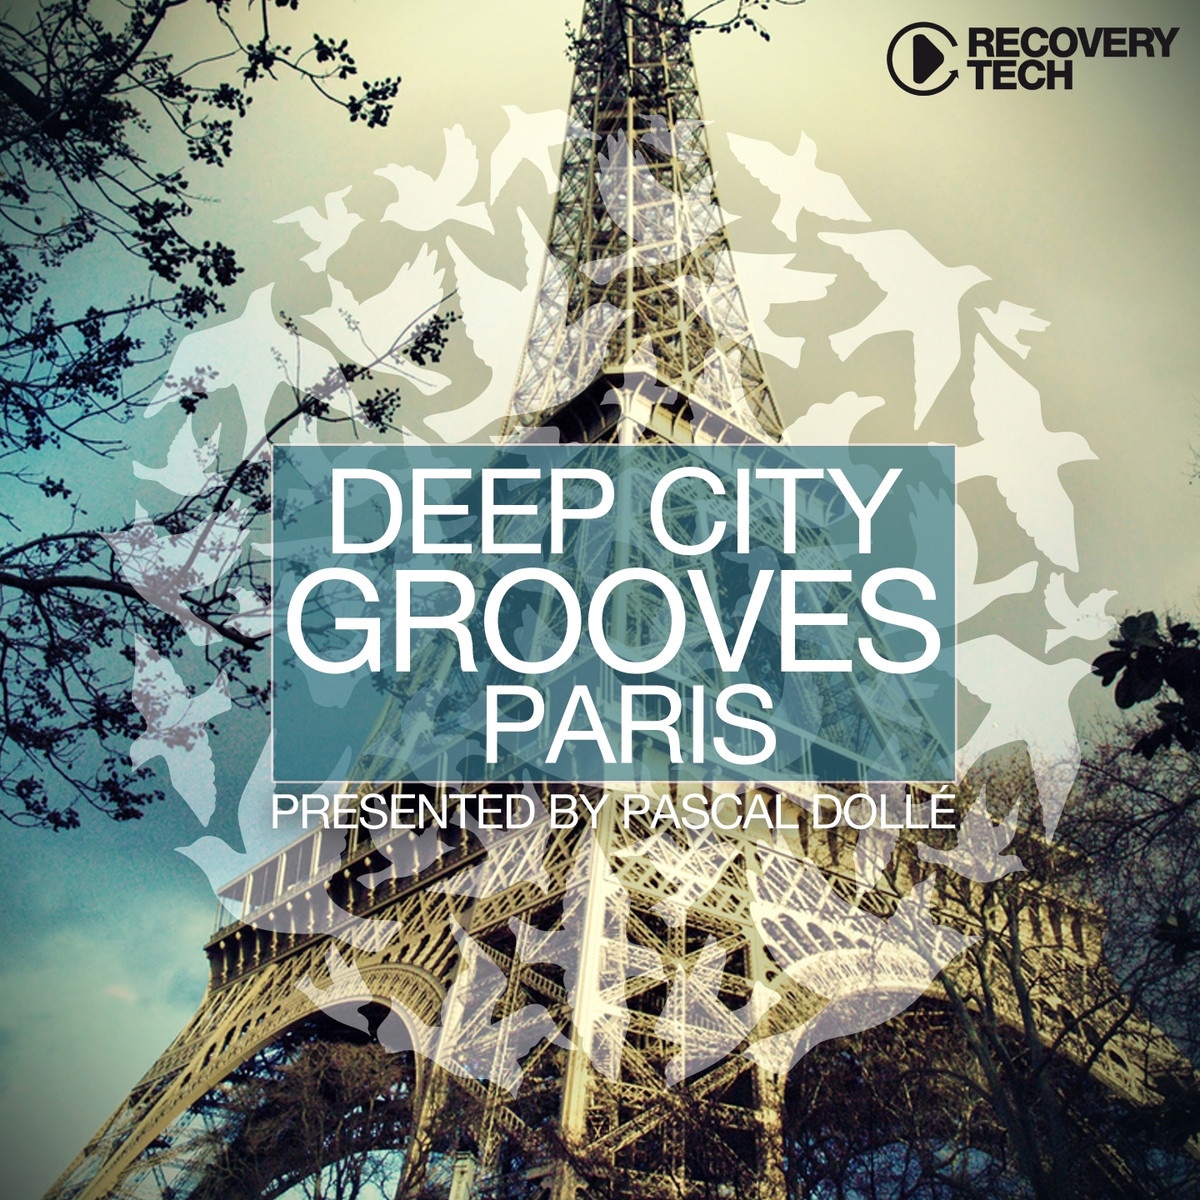 Deep City Grooves Paris